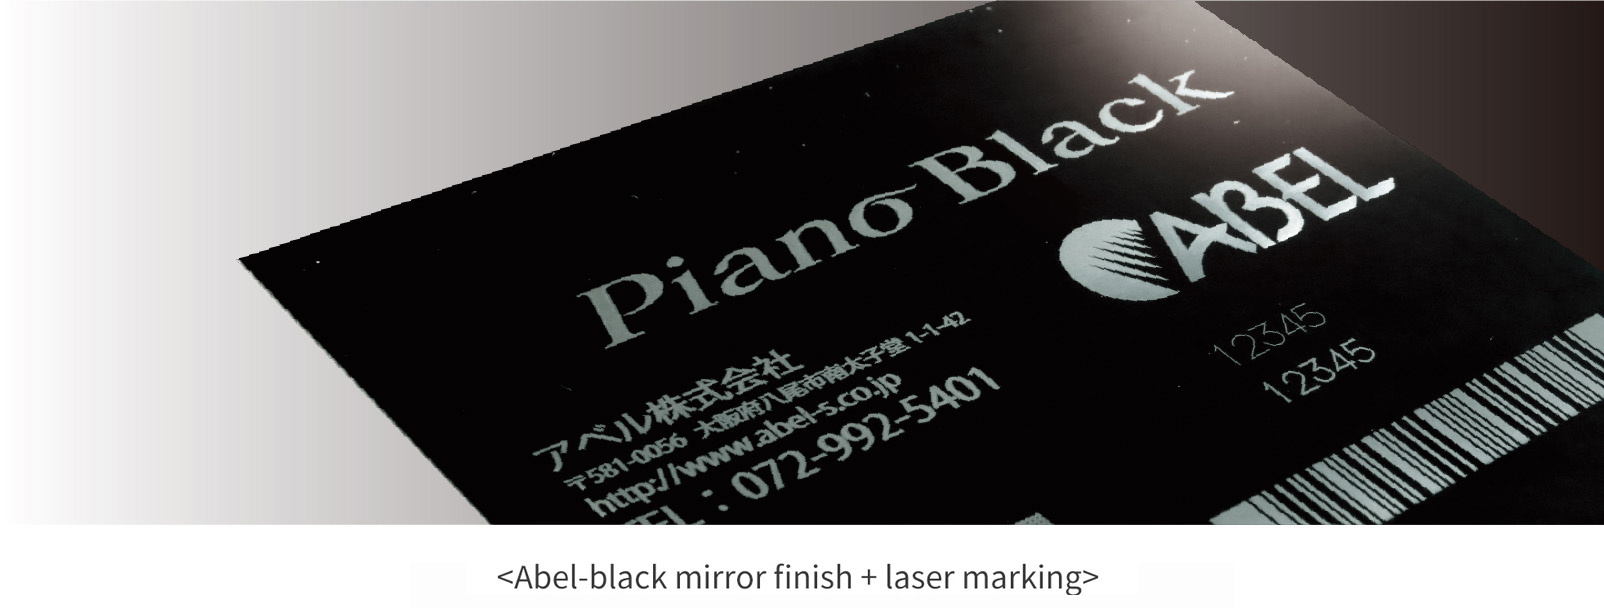 Abel-black mirror finish + laser marking